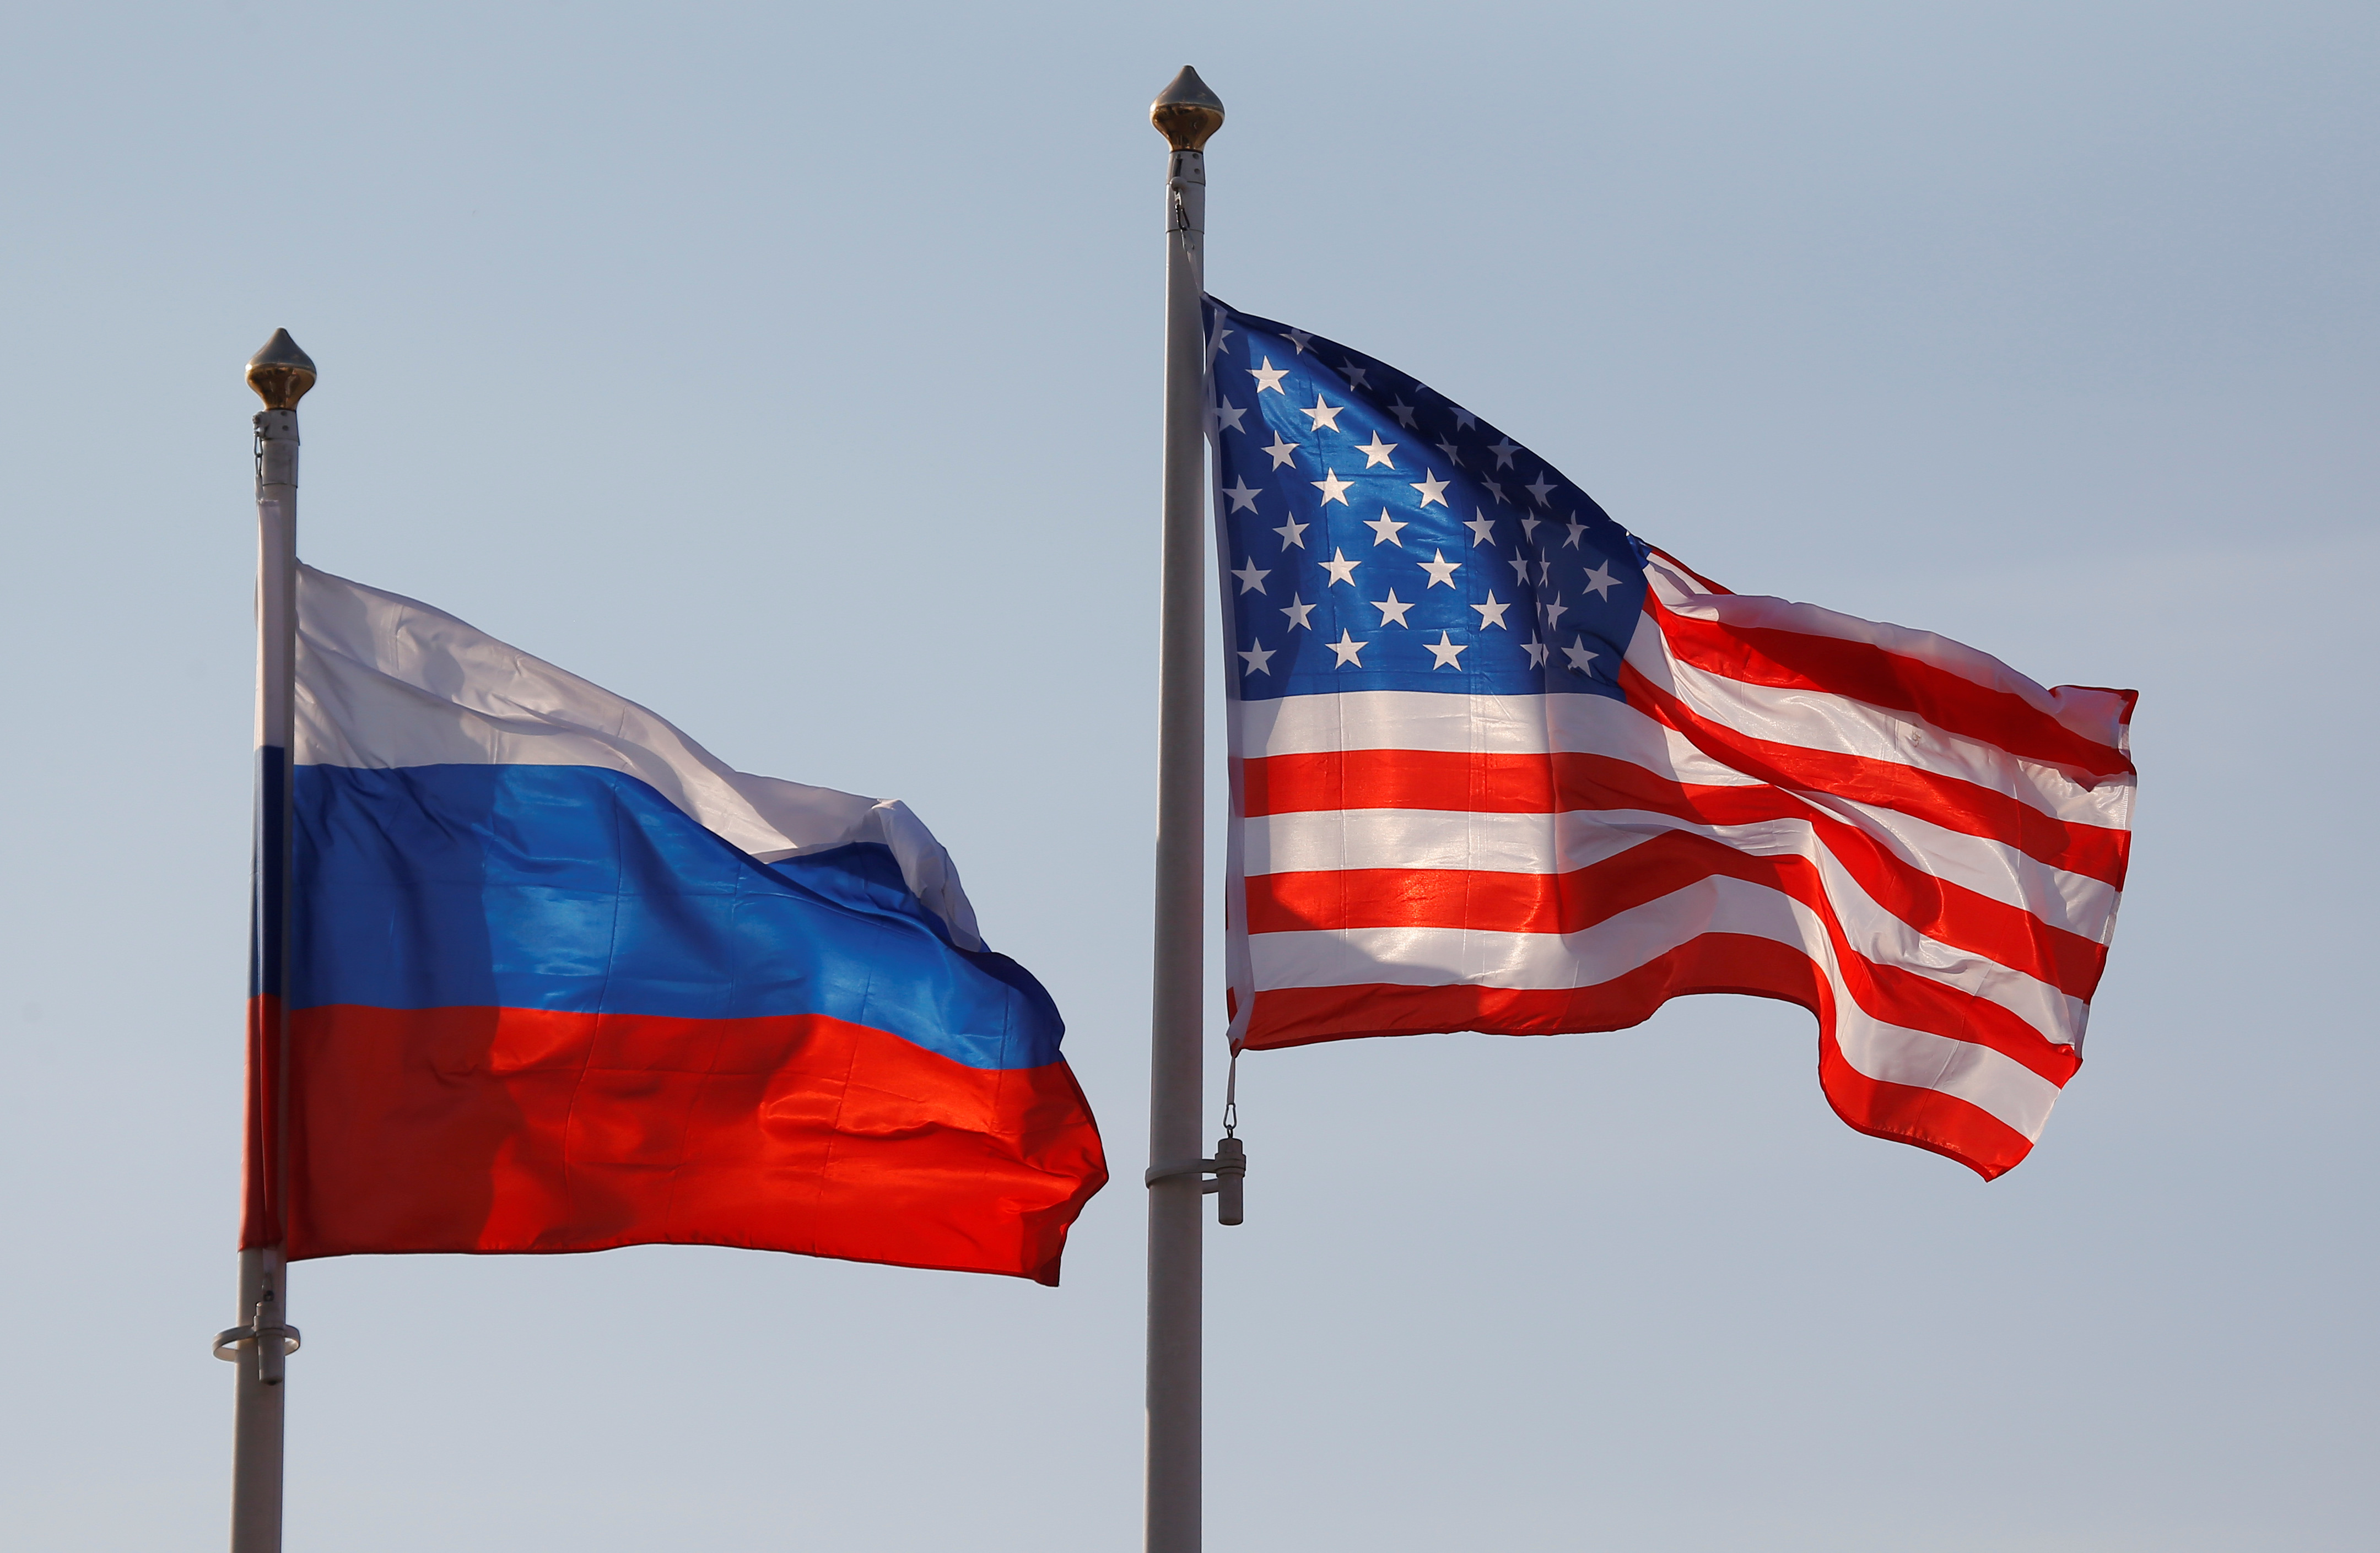 Hiệp ước hạt nhân Mỹ-Nga: Năm 2024 đánh dấu 10 năm kể từ khi Hiệp ước hạt nhân Mỹ-Nga được ký kết. Trong khi cuộc đối đầu vẫn diễn ra, các nước vẫn cần cùng nhau đảm bảo an ninh toàn cầu. Hình ảnh liên quan sẽ giúp bạn thấy được sự quan trọng của việc giữ gìn hòa bình và an toàn.